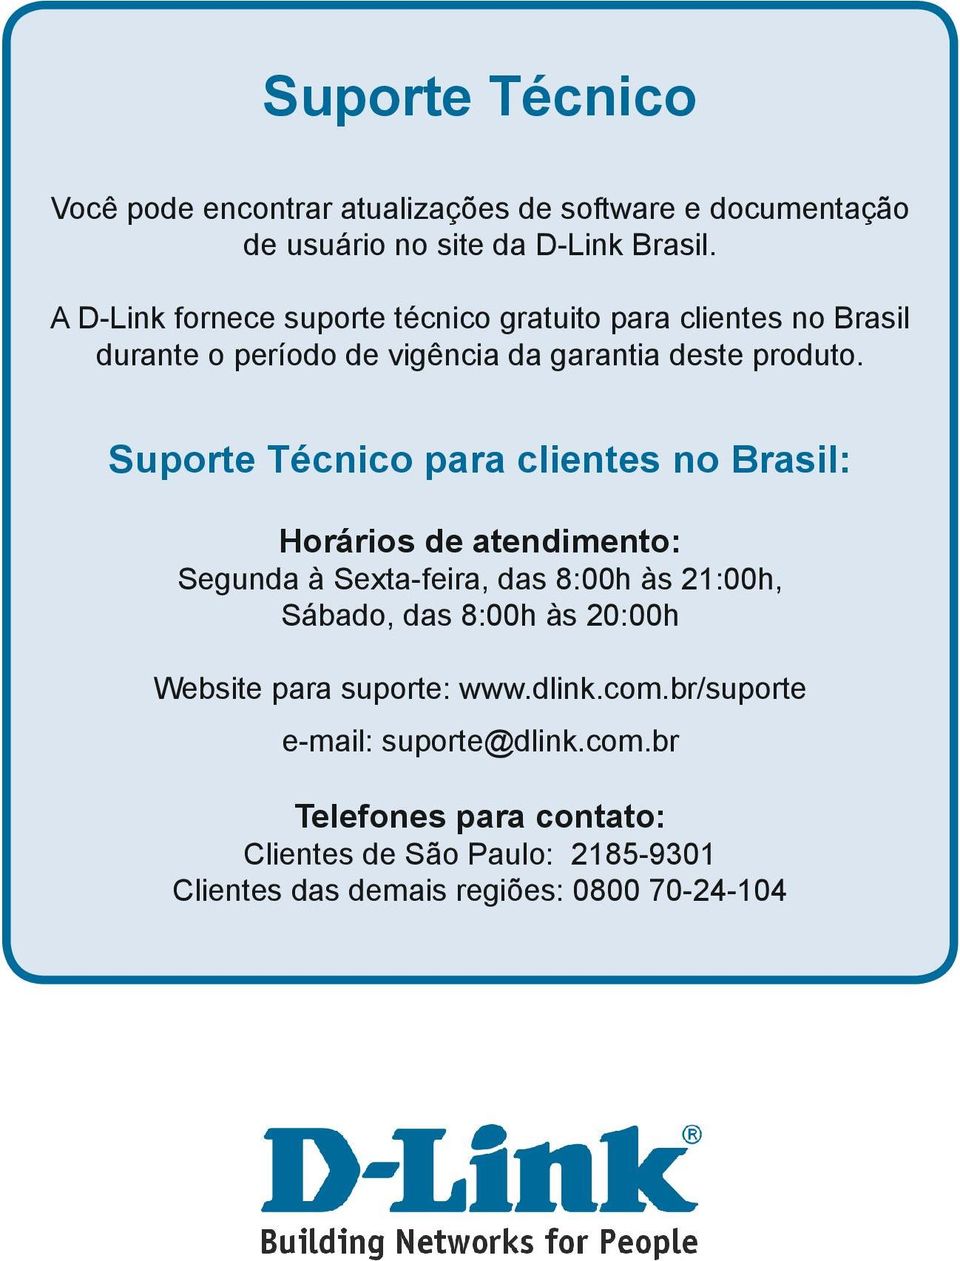 Suporte Técnico para clientes no Brasil: Horários de atendimento: Segunda à Sexta-feira, das 8:00h às 21:00h, Sábado, das 8:00h às 20:00h